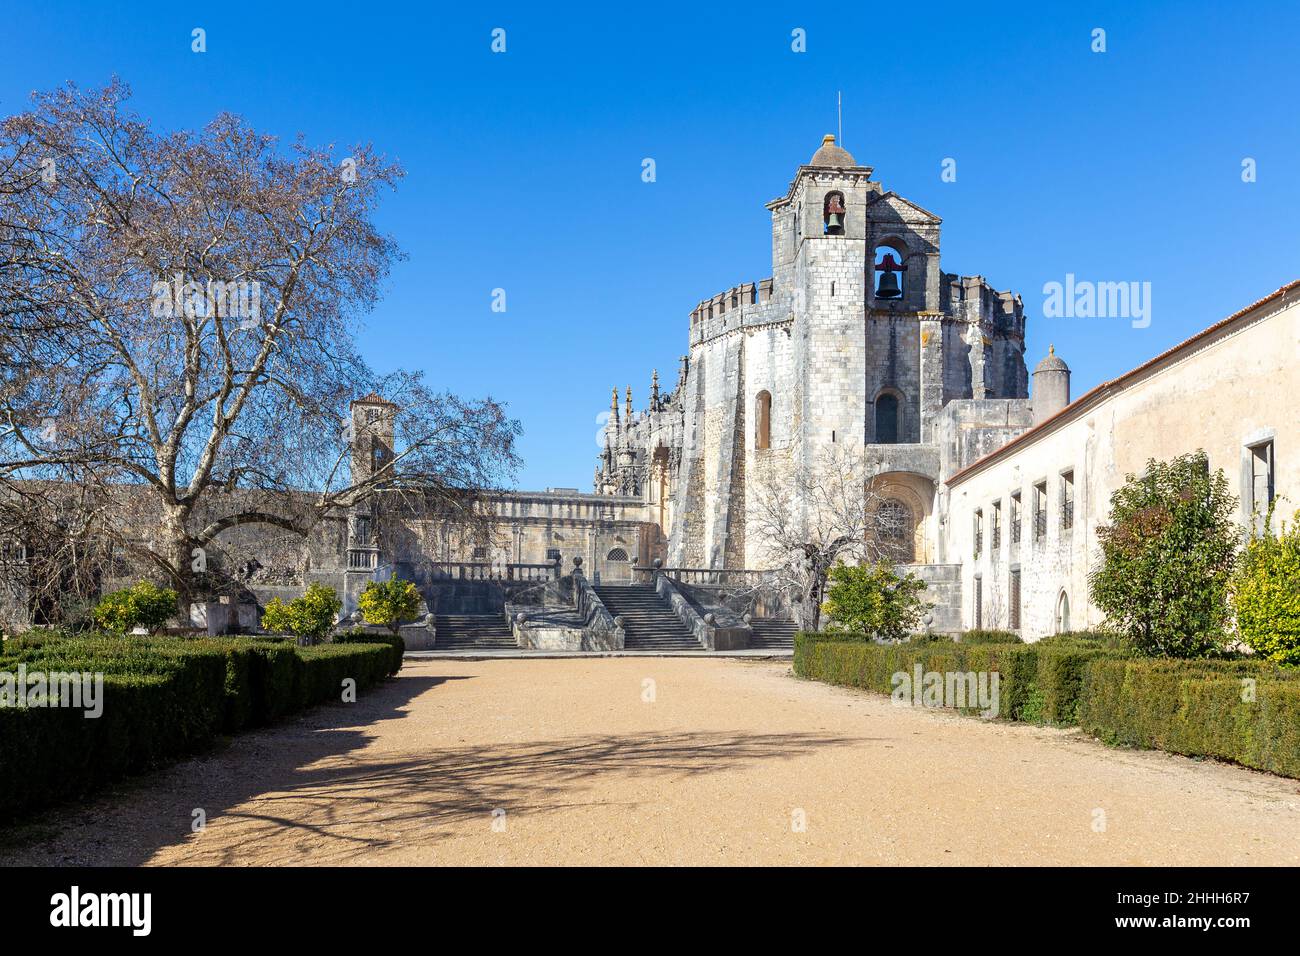 Das Kloster Christi oder Convento de Cristo ist ein kunstvoll gemeißeltes römisch-katholisches Kloster im manuelinischen Stil auf einem Hügel in Tomar, Portugal. Stockfoto